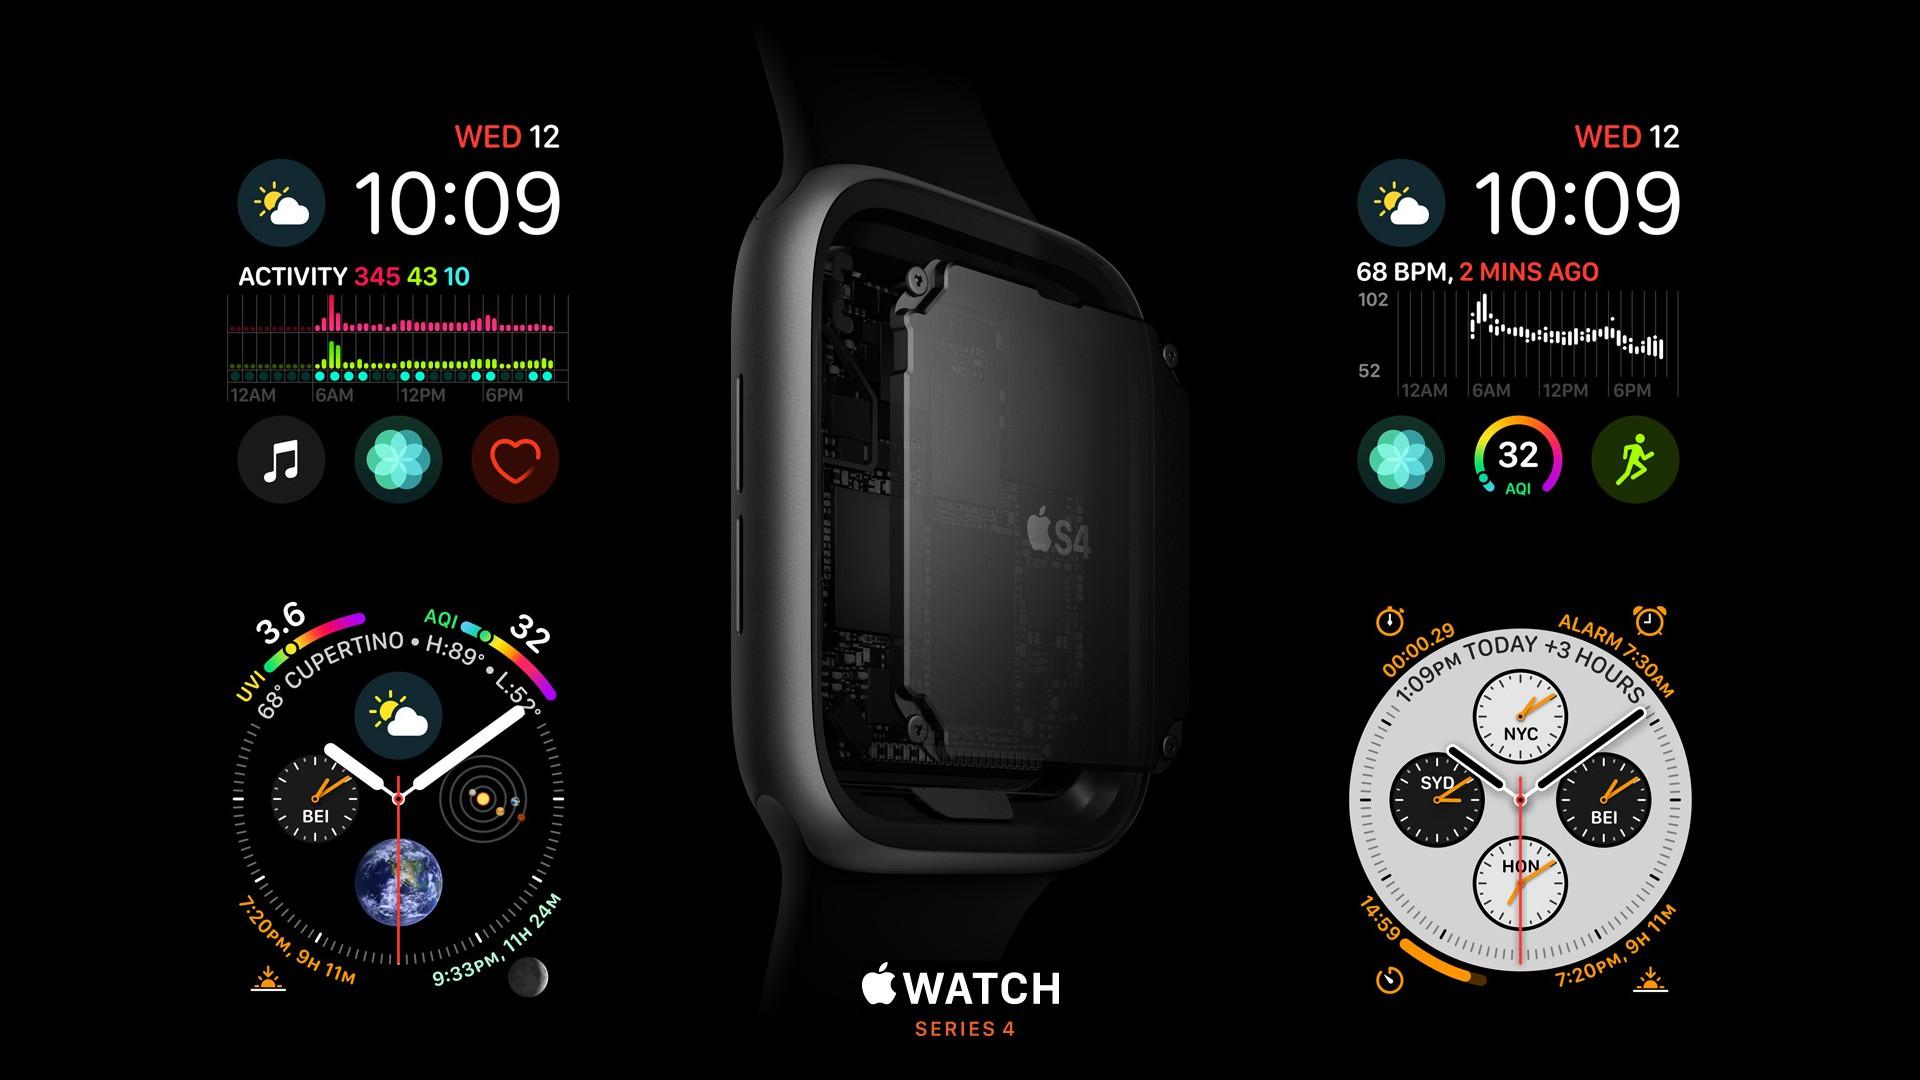 1920 x 1080 · jpeg - Wallpaper Apple Watch Series 4, S4, Apple September 2018 Event, Hi-Tech ...